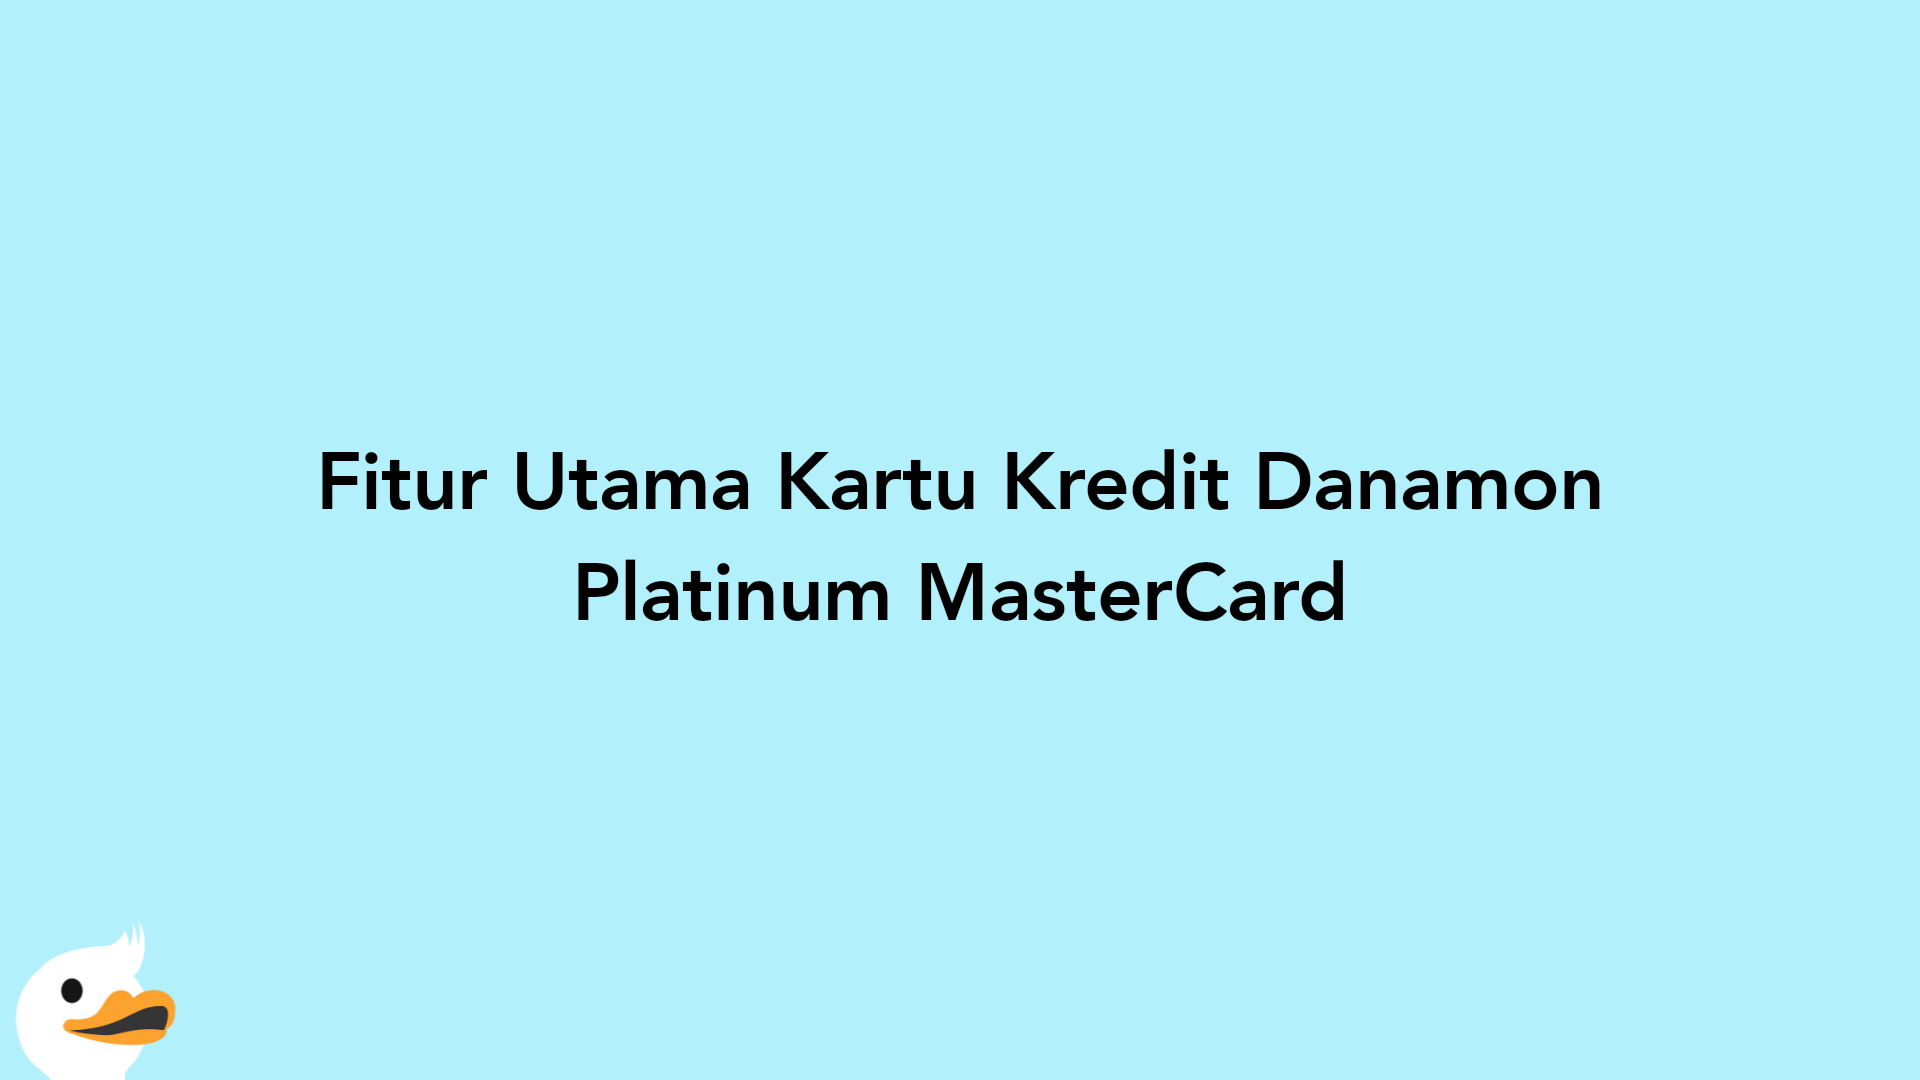 Fitur Utama Kartu Kredit Danamon Platinum MasterCard